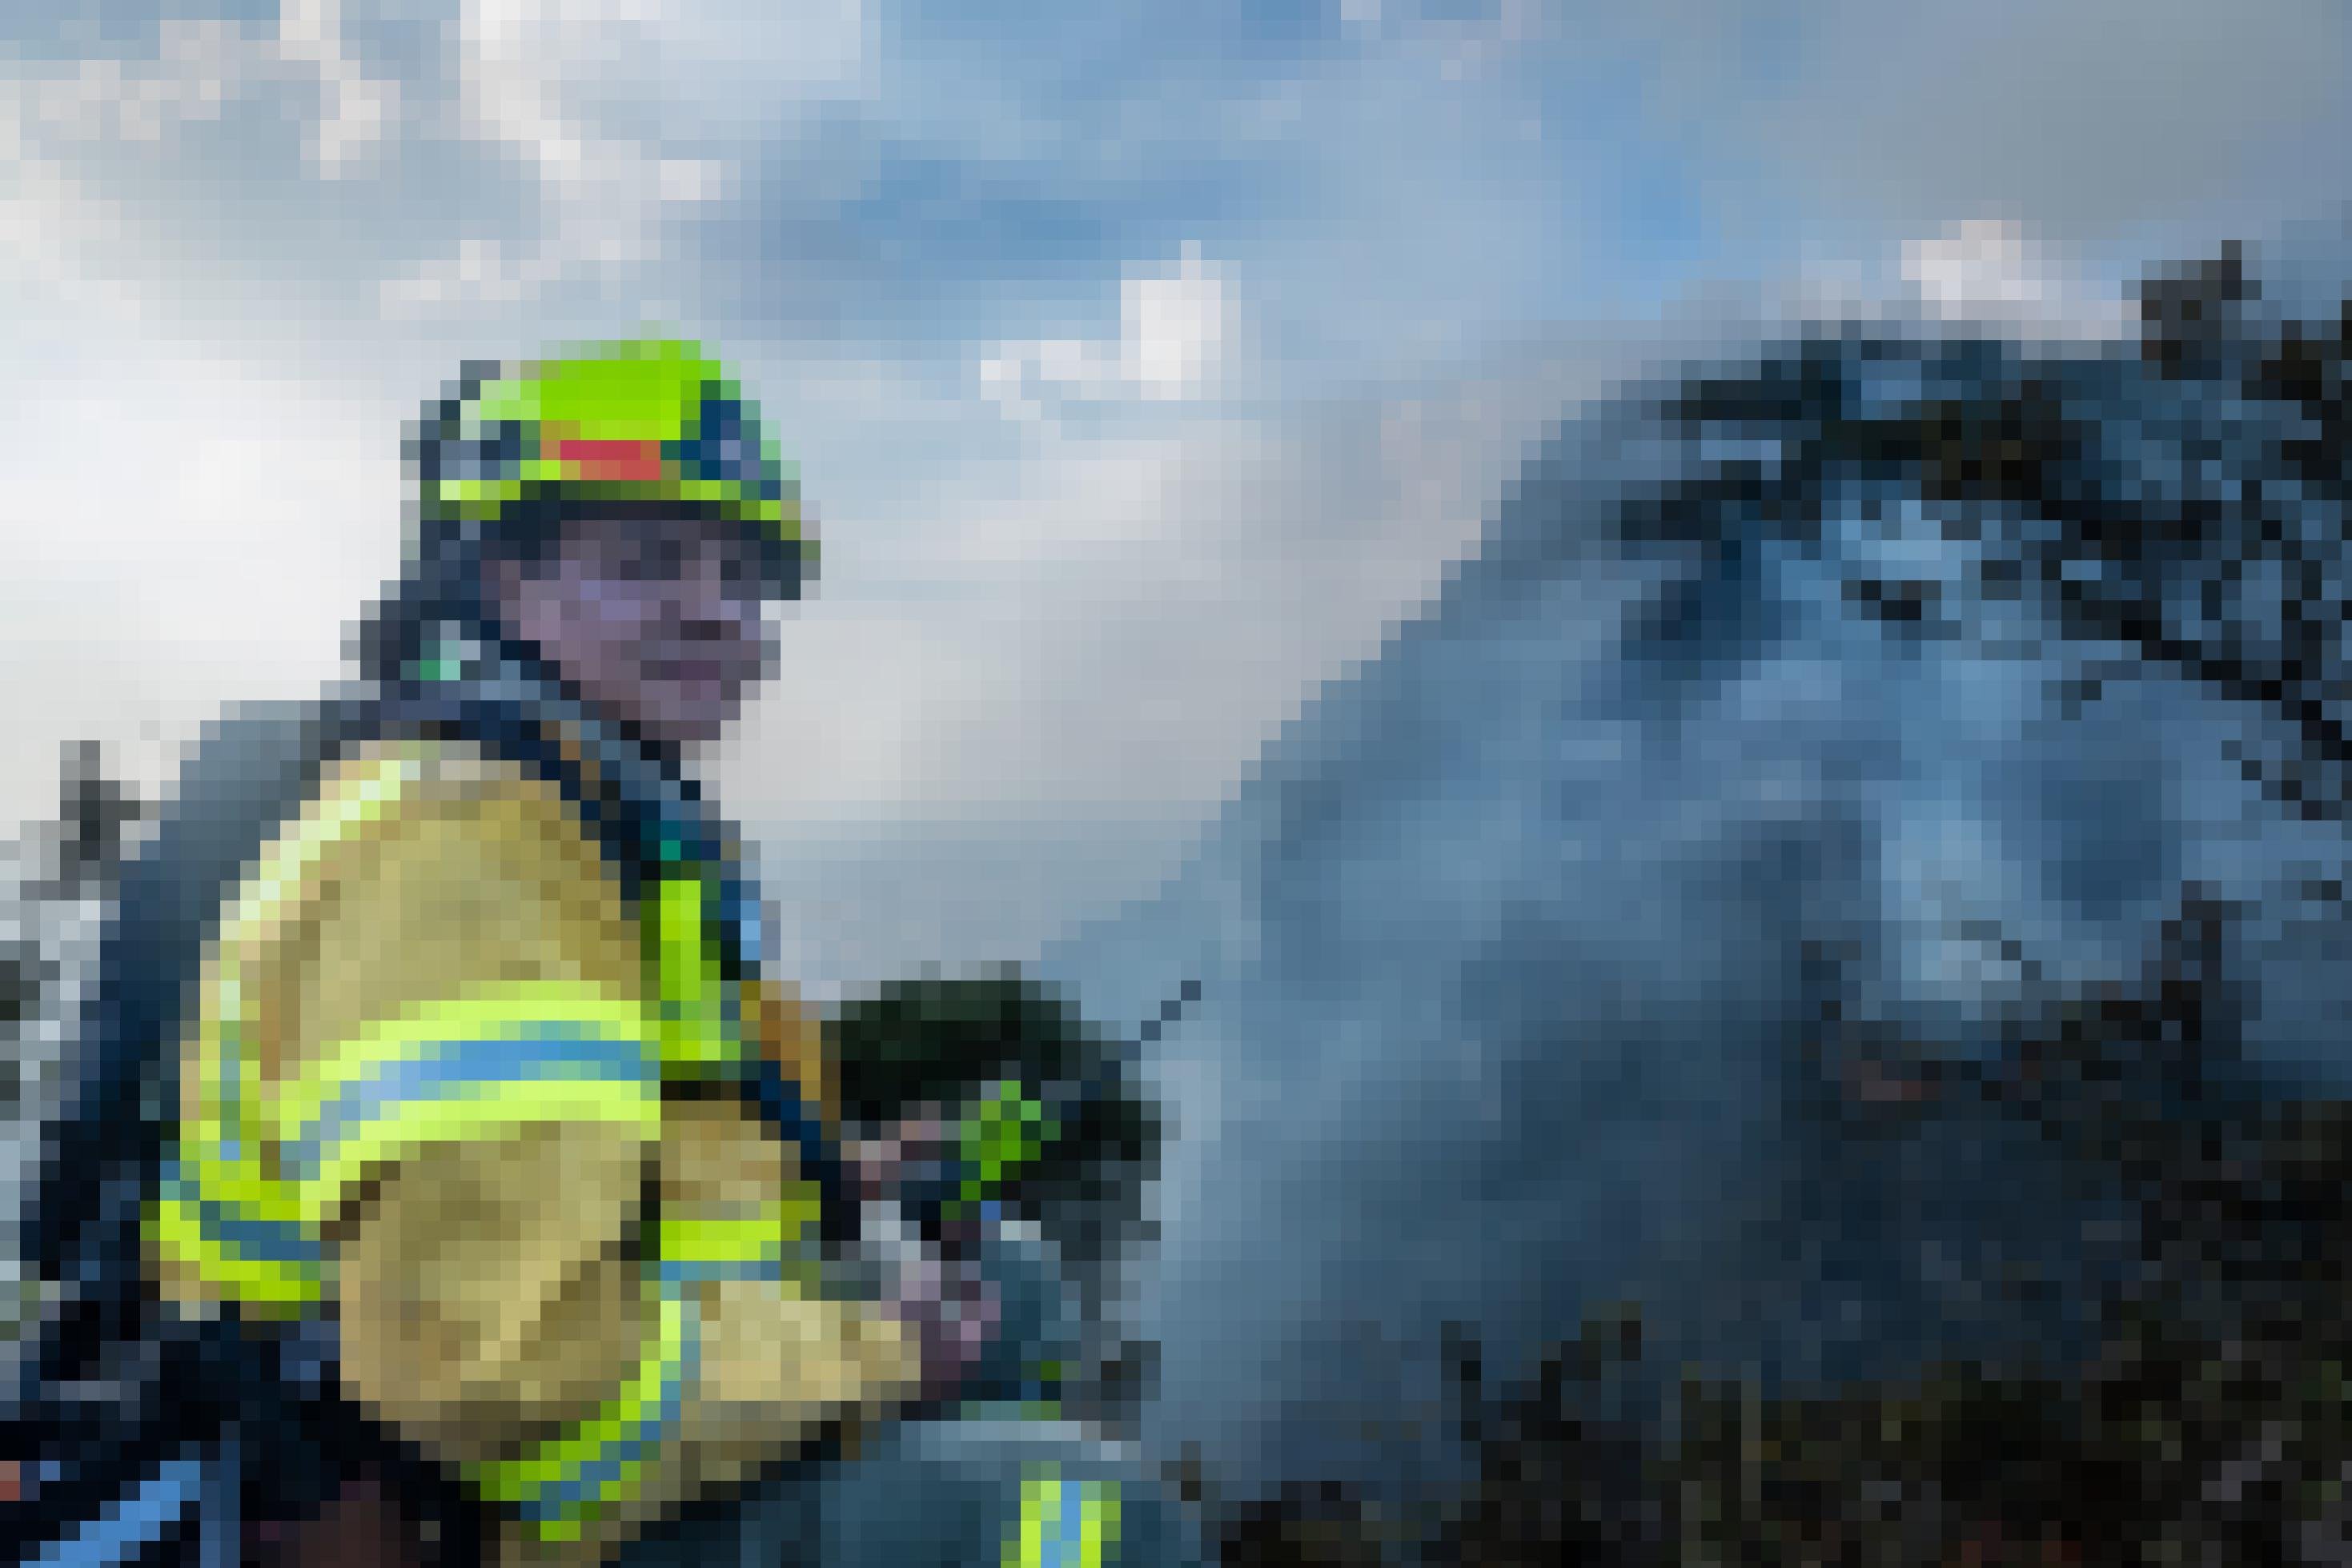 Ein Feuerwehrmann in Schutzkleidung (Helm, Lampe, Funkgerät, Rucksack) blickt mit verrußtem Gesicht und die Kamera. Im Hintergrund ein von Rauchschwaden fast komplett verhüllter Berg.